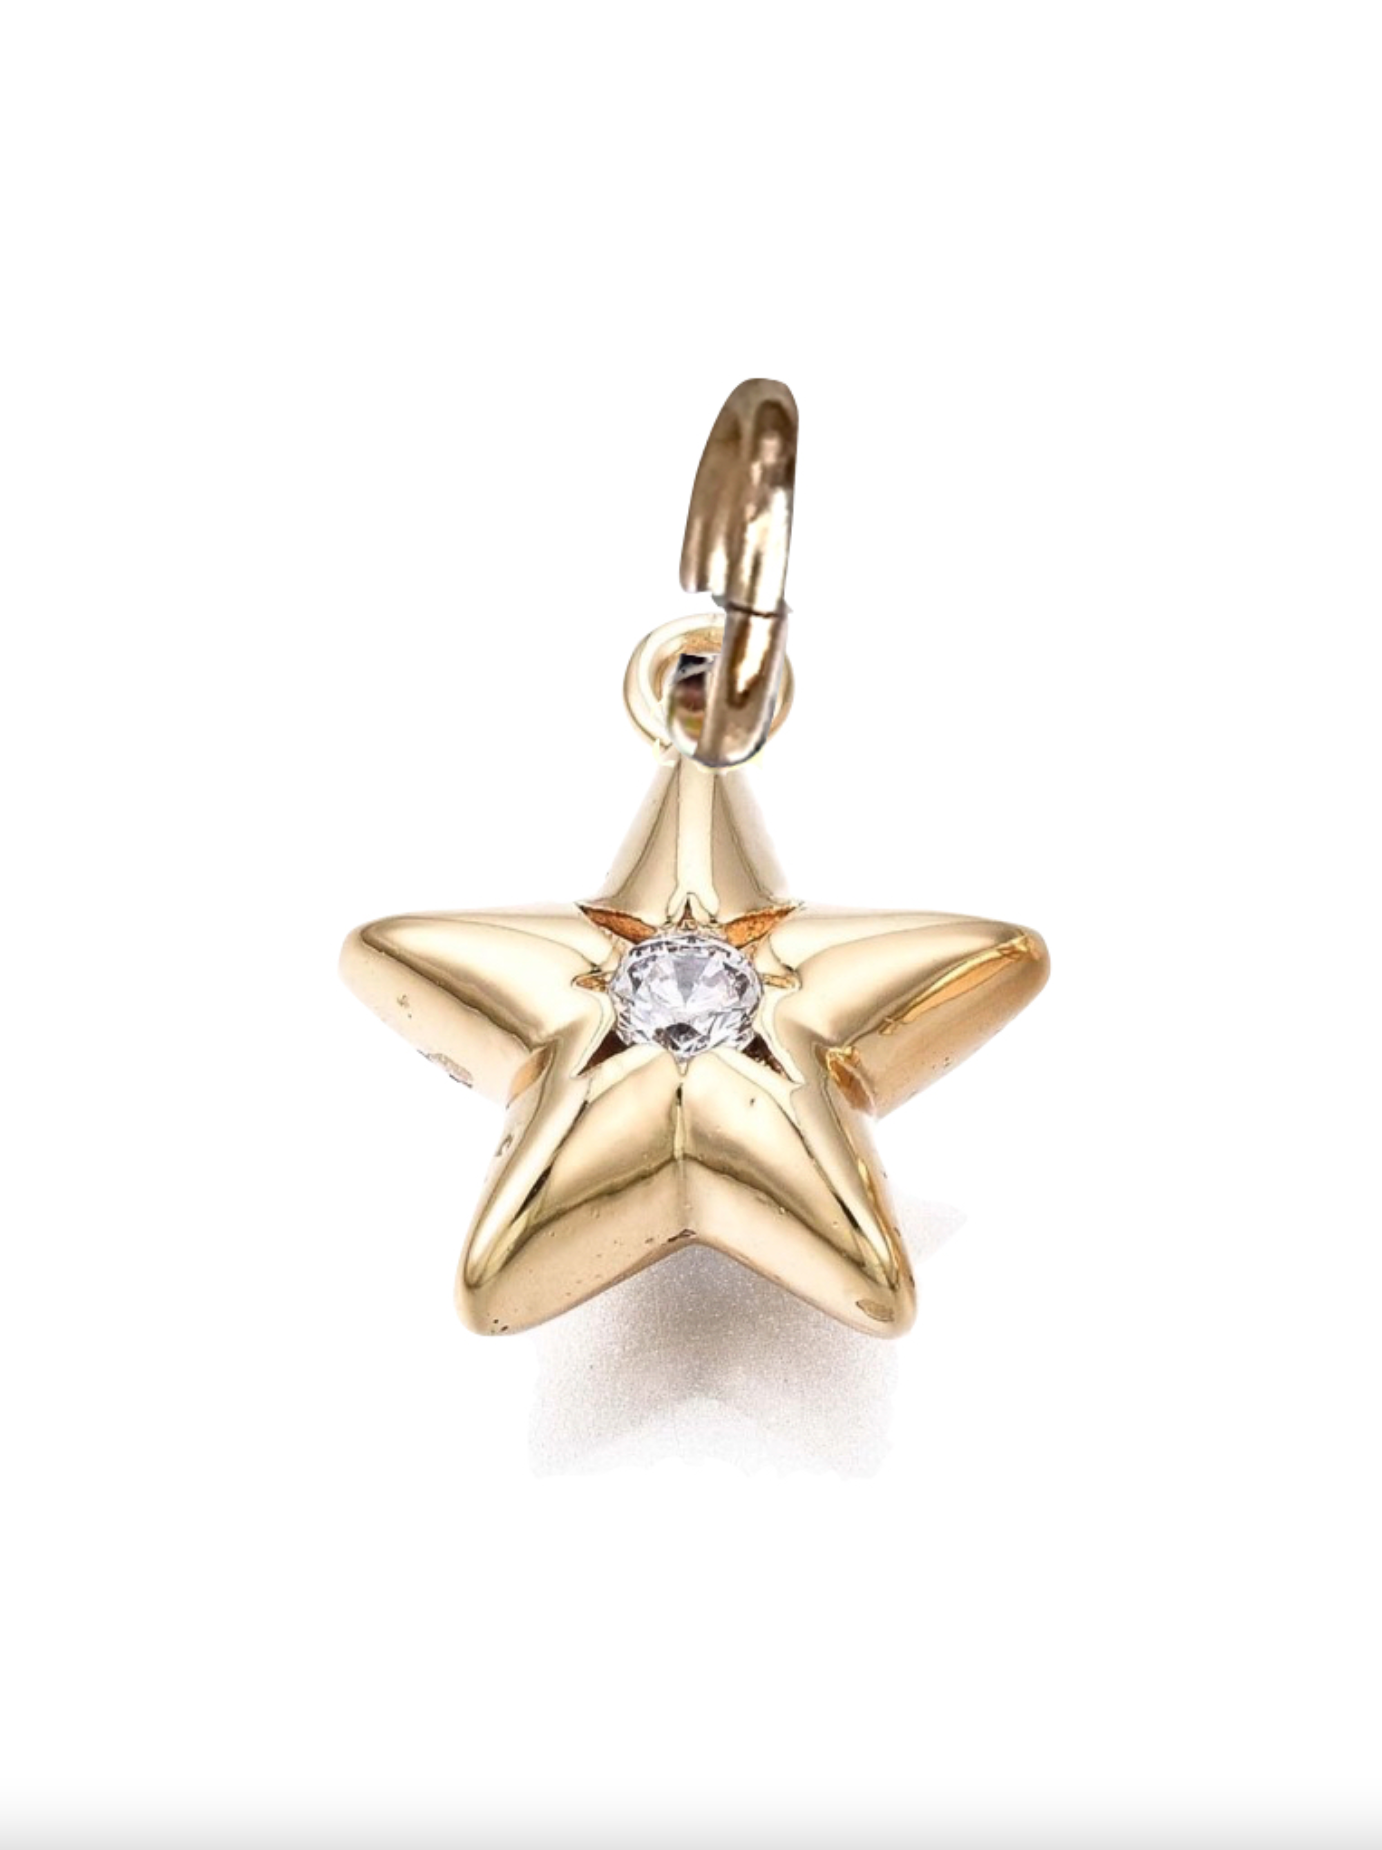 Autentic-Louis-Vuitton-Pandantiff-Star-Blossom-Shell-Necklace-PG